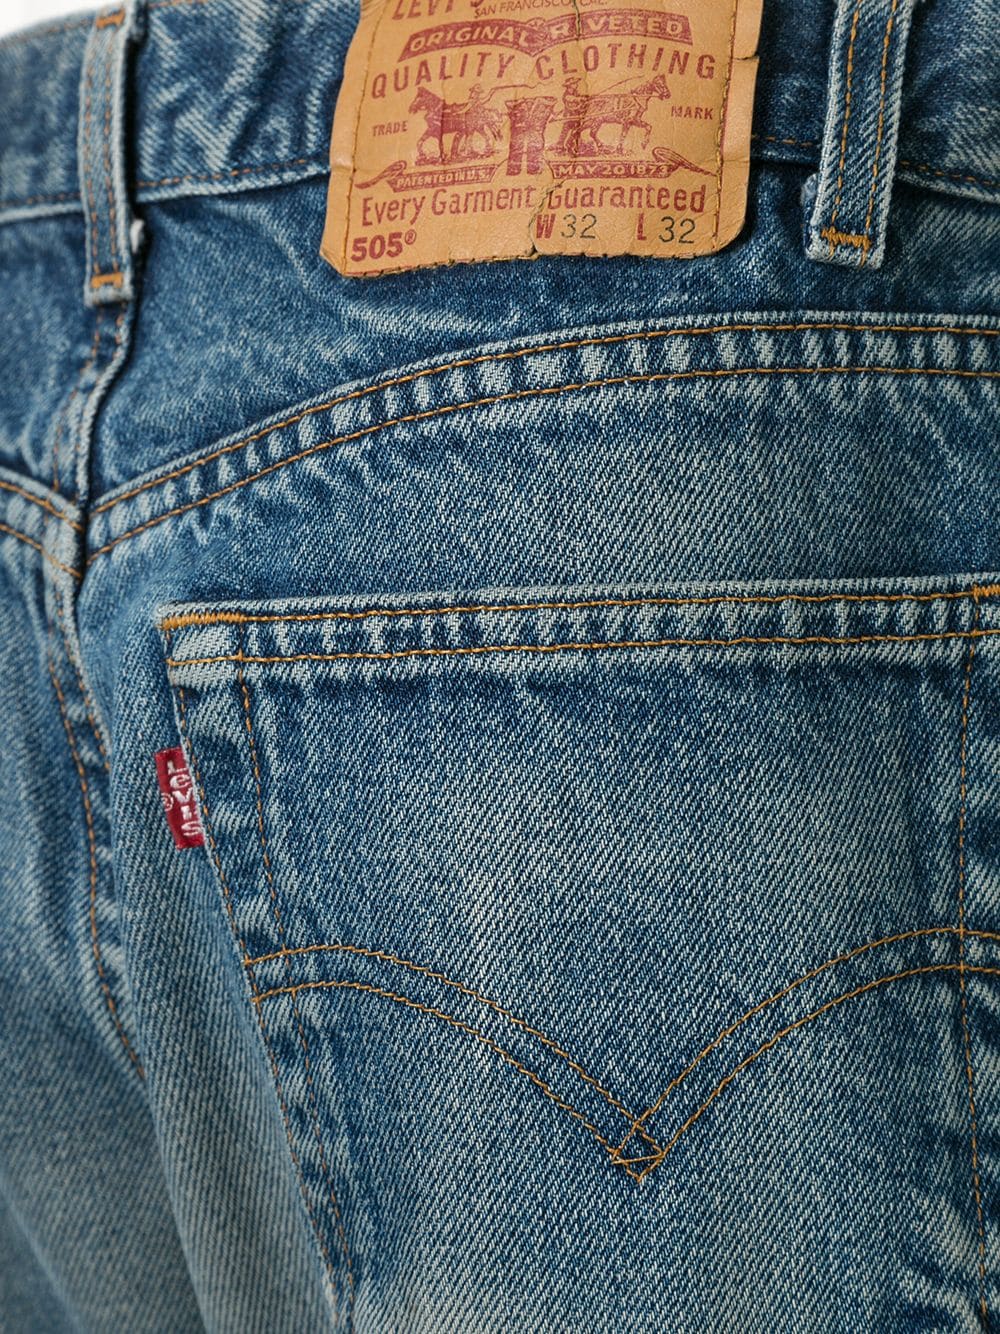 фото Fake alpha x levi's vintage джинсы levis 505 1990-х годов